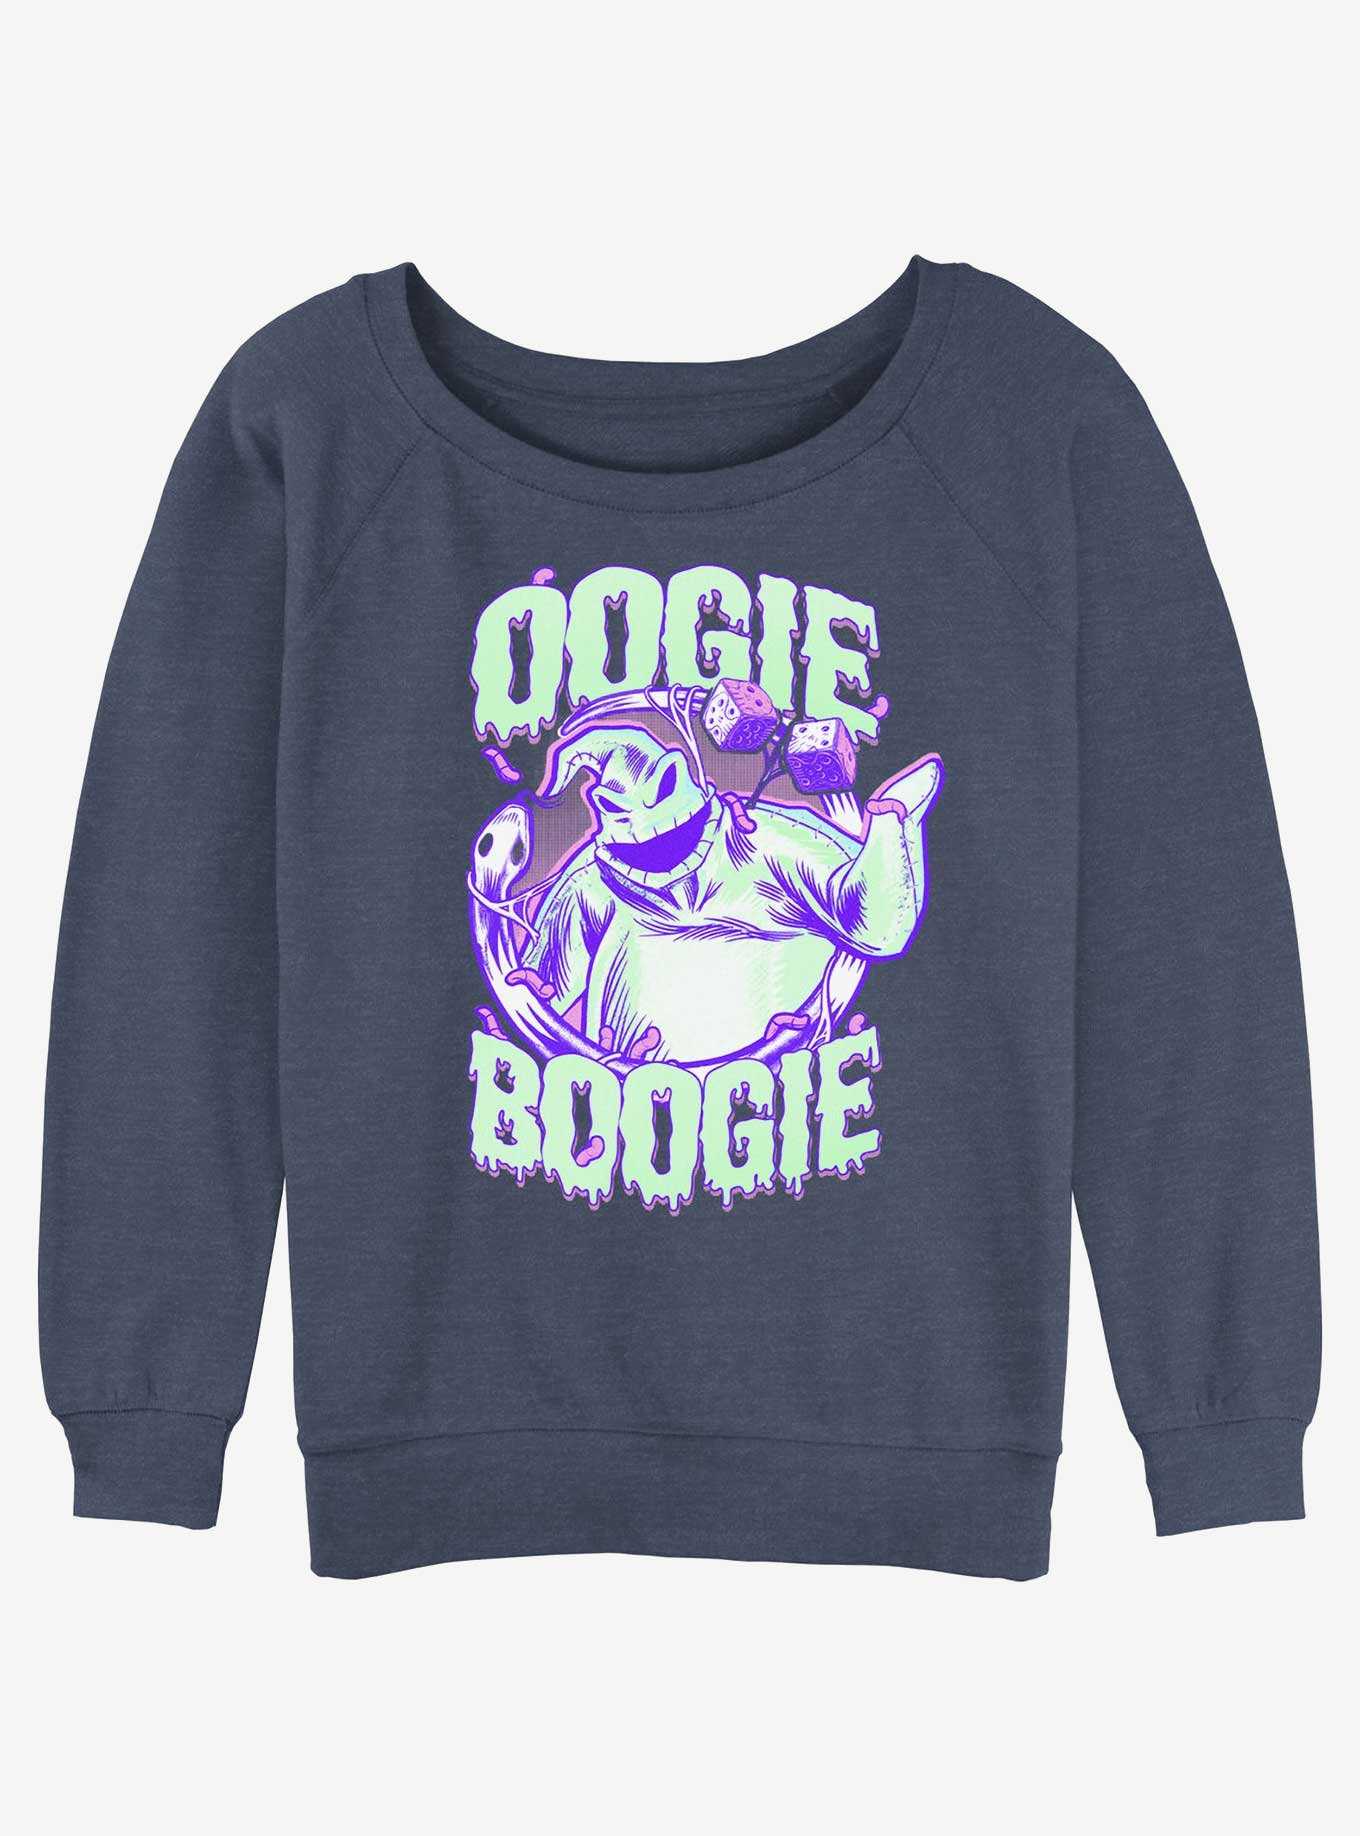 Disney The Nightmare Before Christmas Oogie Boogie Girls Slouchy Sweatshirt, , hi-res